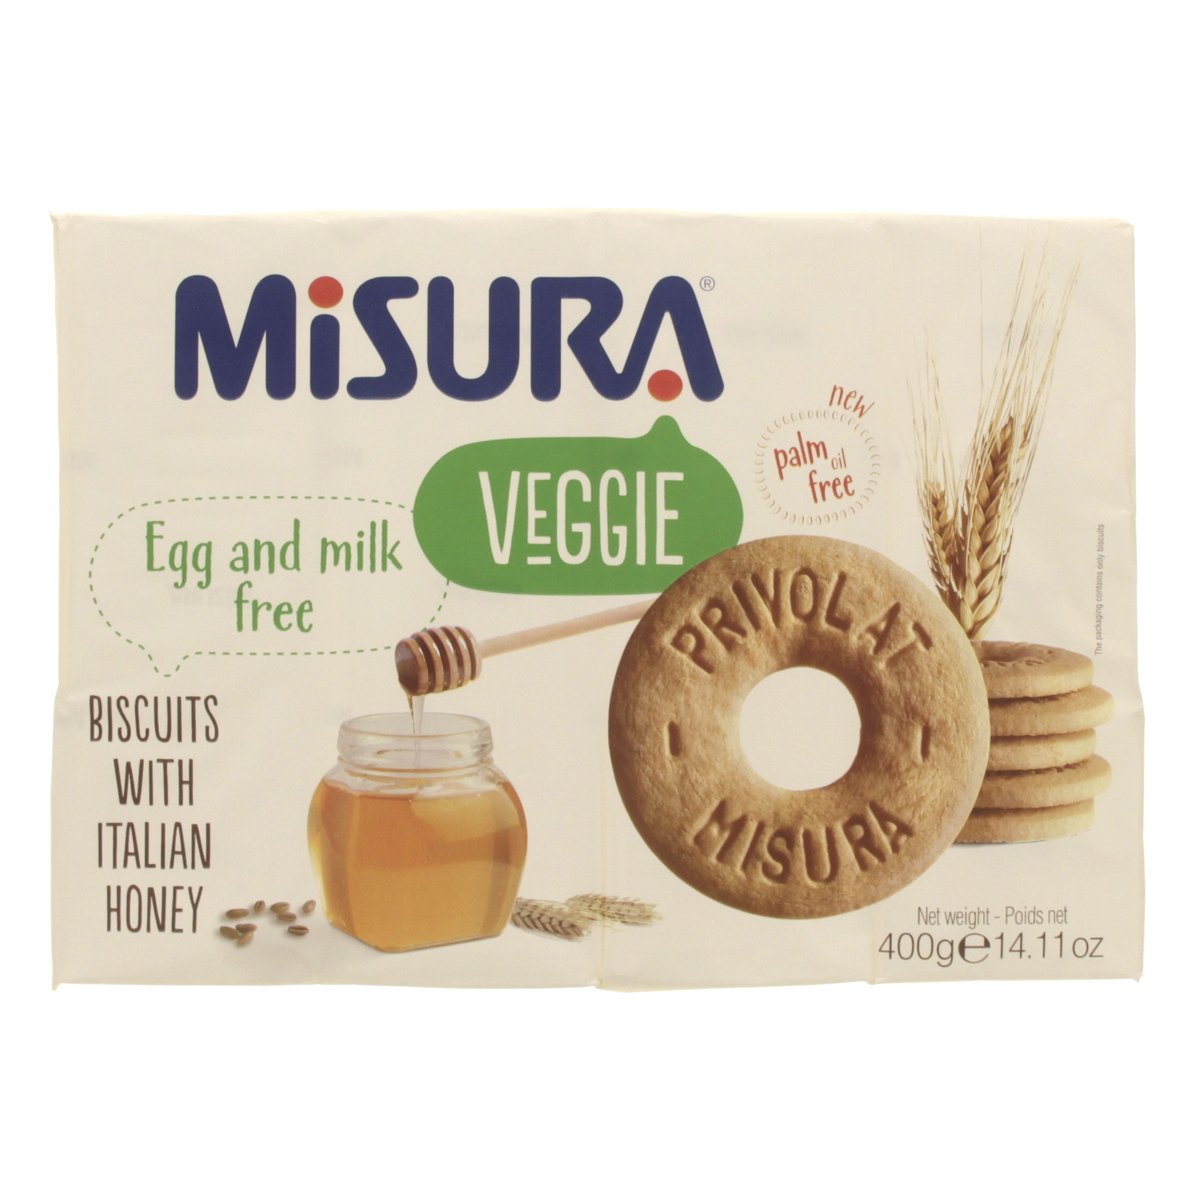 Misura Veggie Italian Honey Biscuits 400g